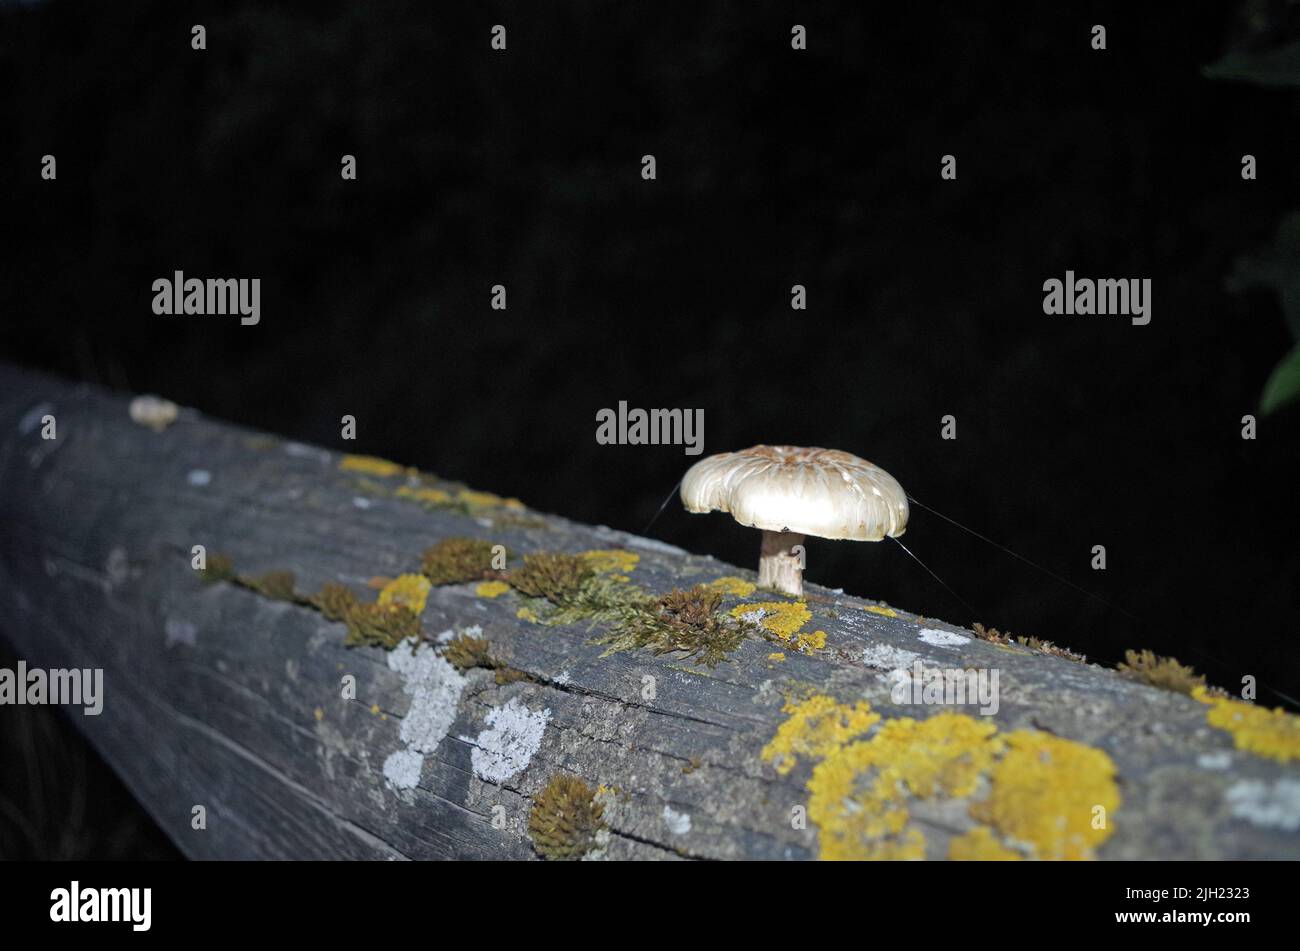 Mushroom on a Wood. Stock Photo